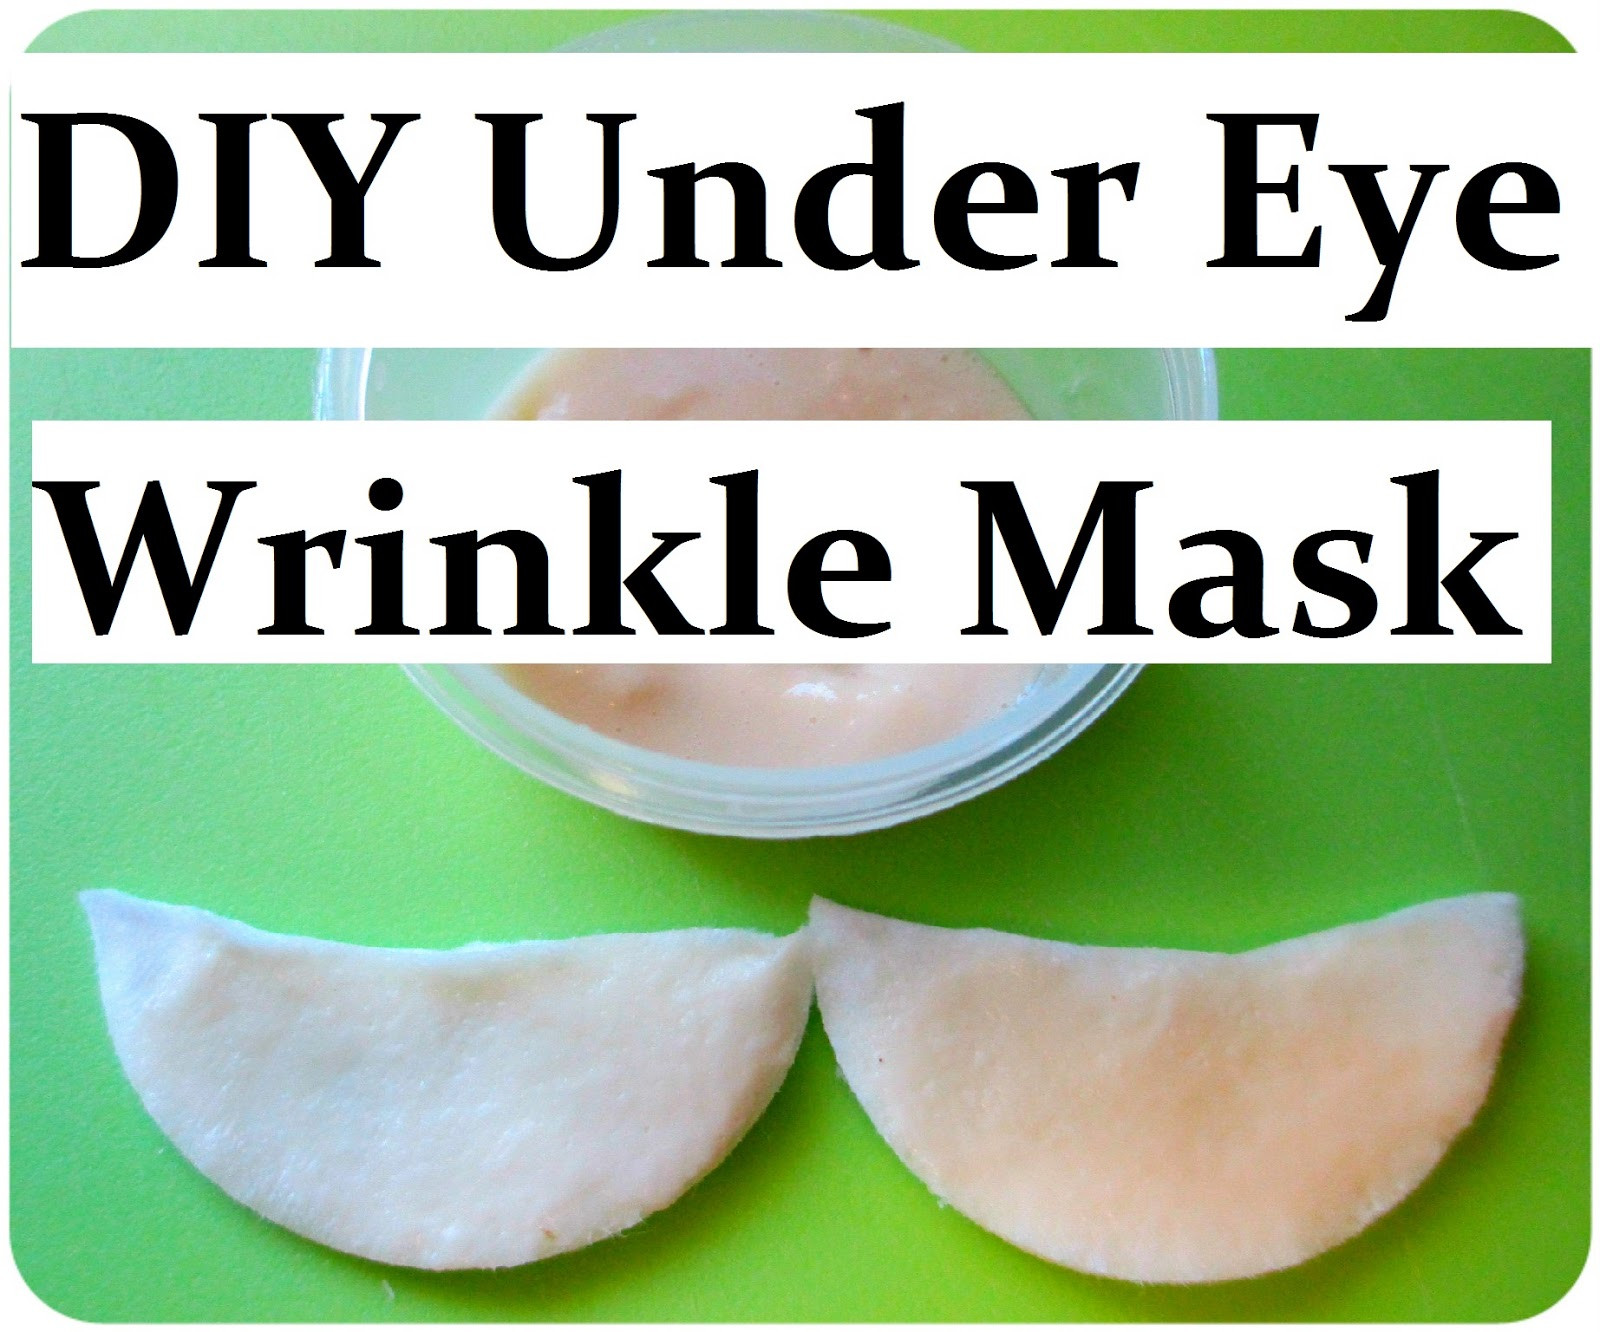 DIY Under Eye Mask
 Maria Sself Chekmarev DIY Natural Anti Wrinkle Eye Mask